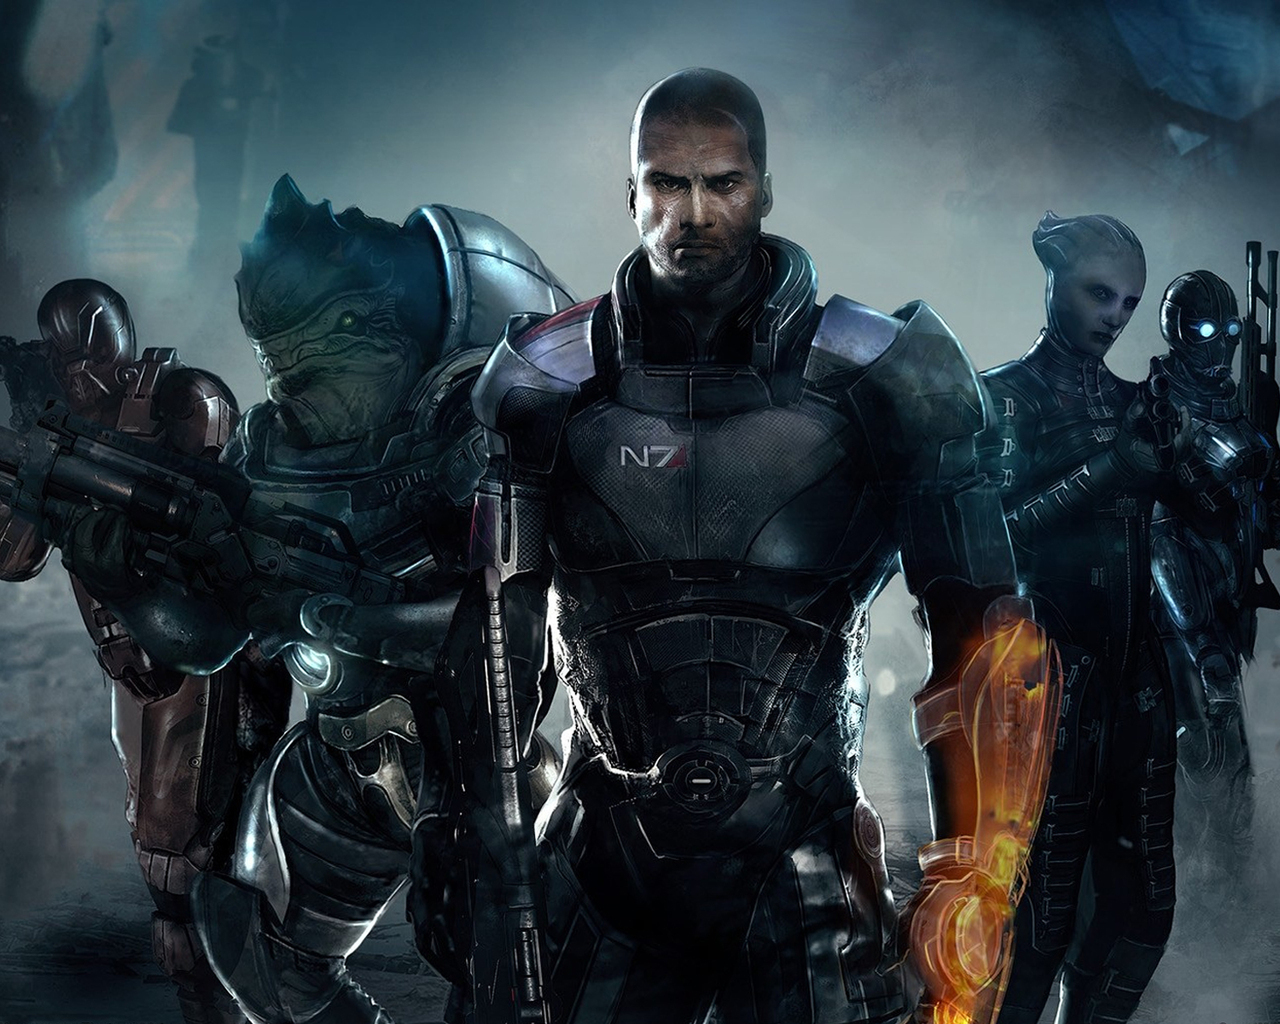 Descarga gratuita de fondo de pantalla para móvil de Mass Effect, Juegos.